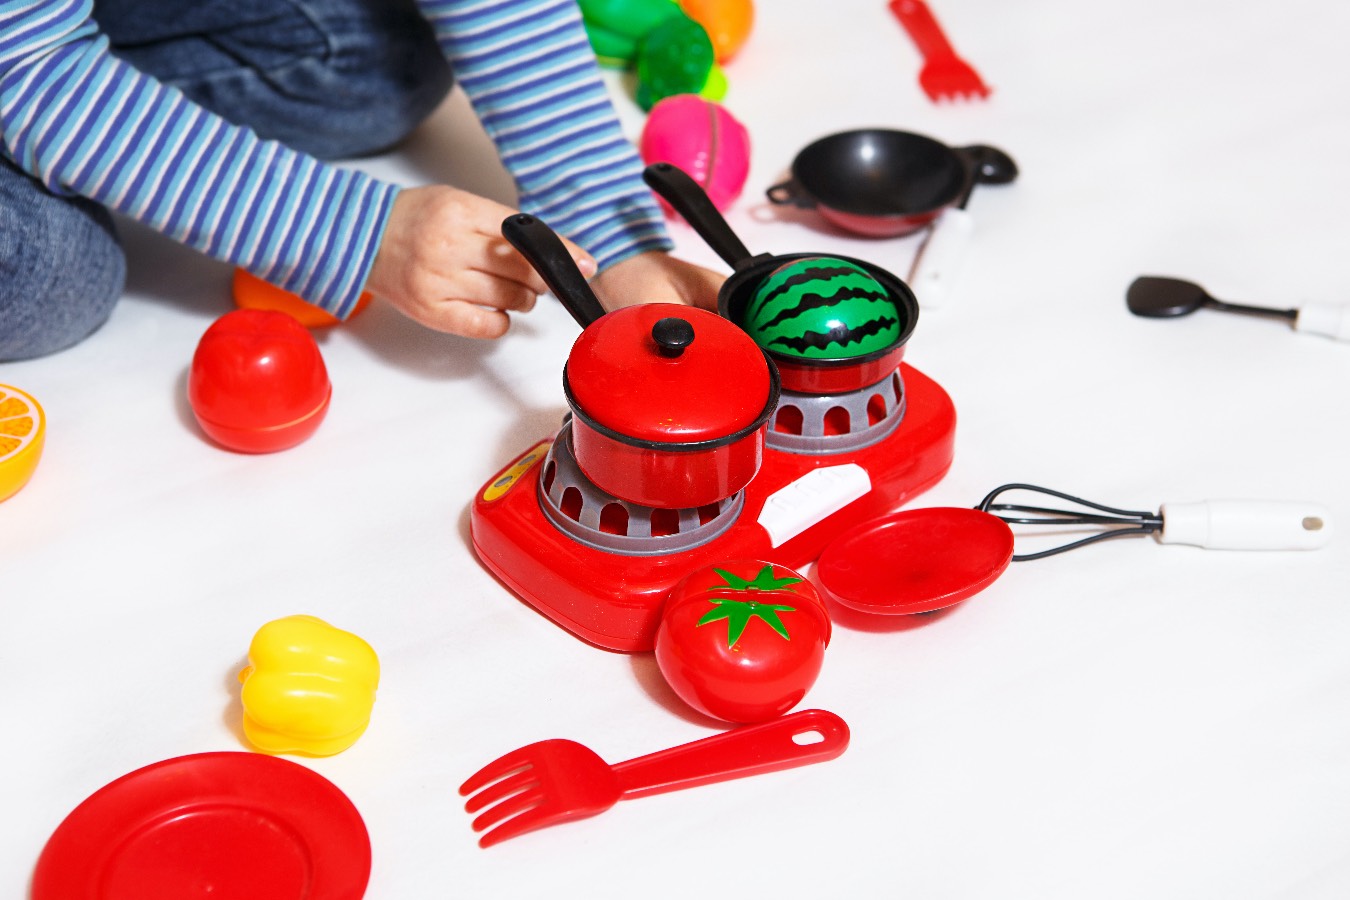 Genialne prezenty dla małych kucharzy. Podaruj maluchom kreatywne zestawy kuchenne na Dzień Dziecka